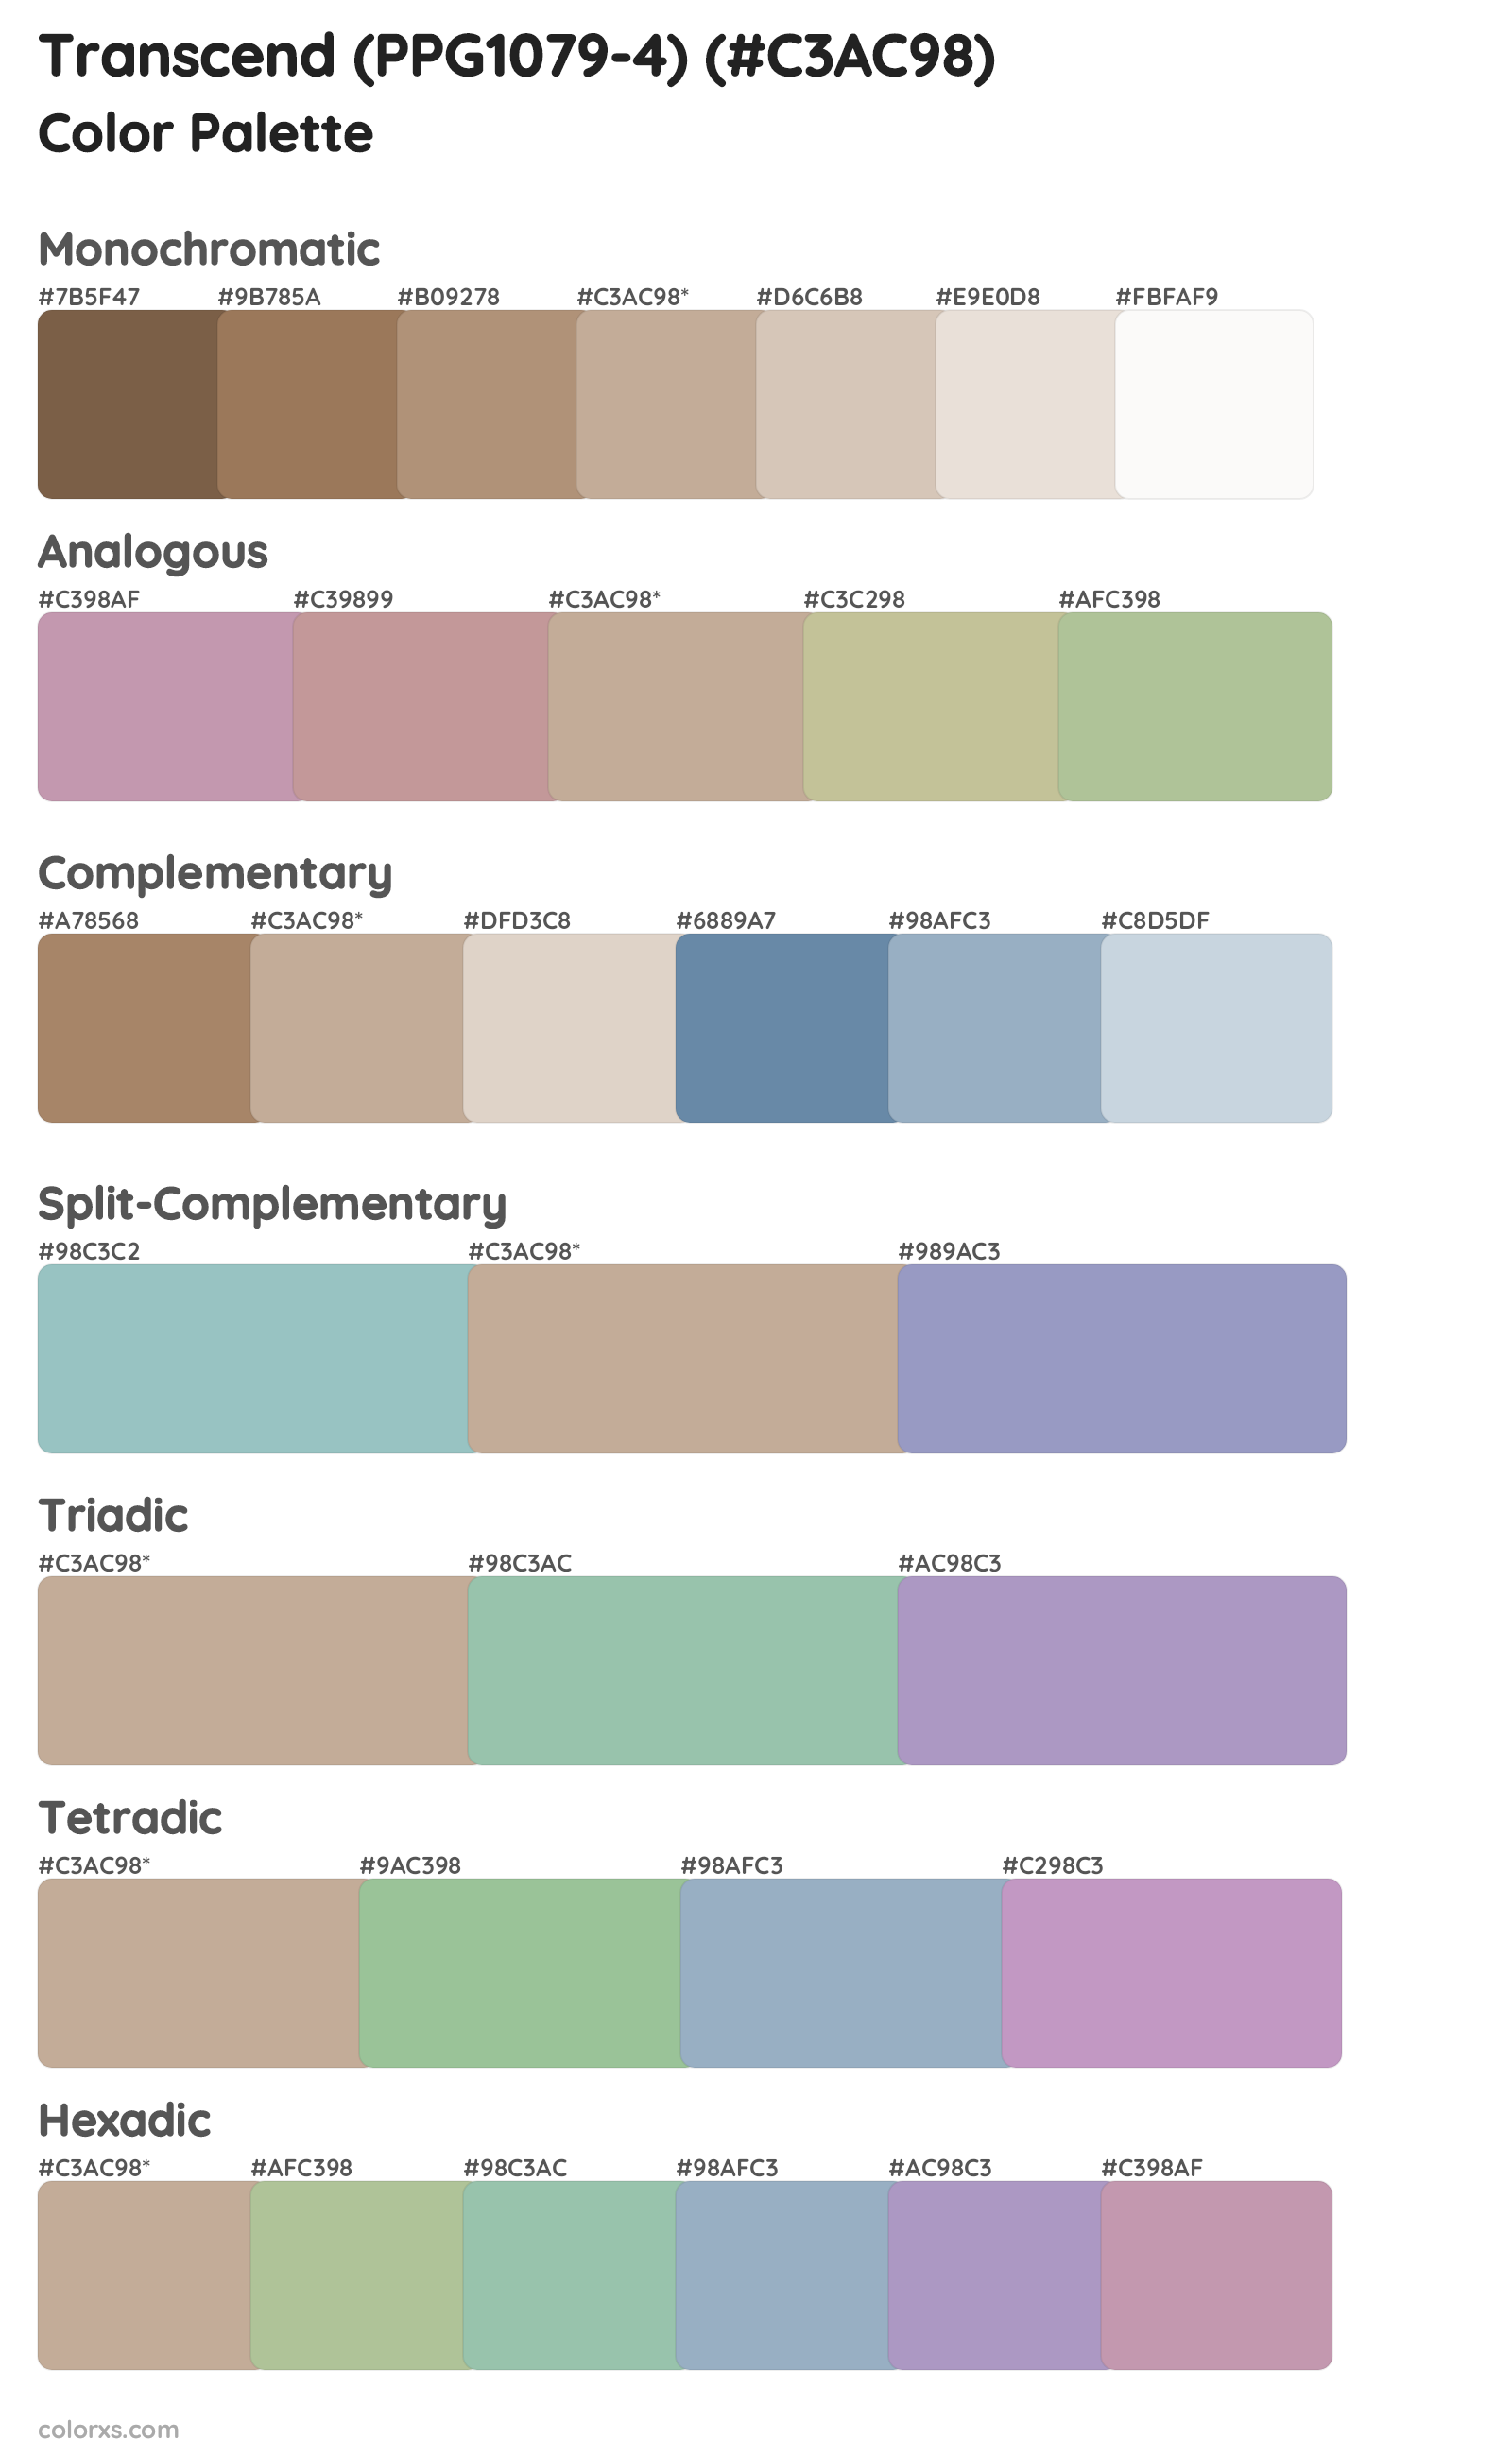 Transcend (PPG1079-4) Color Scheme Palettes